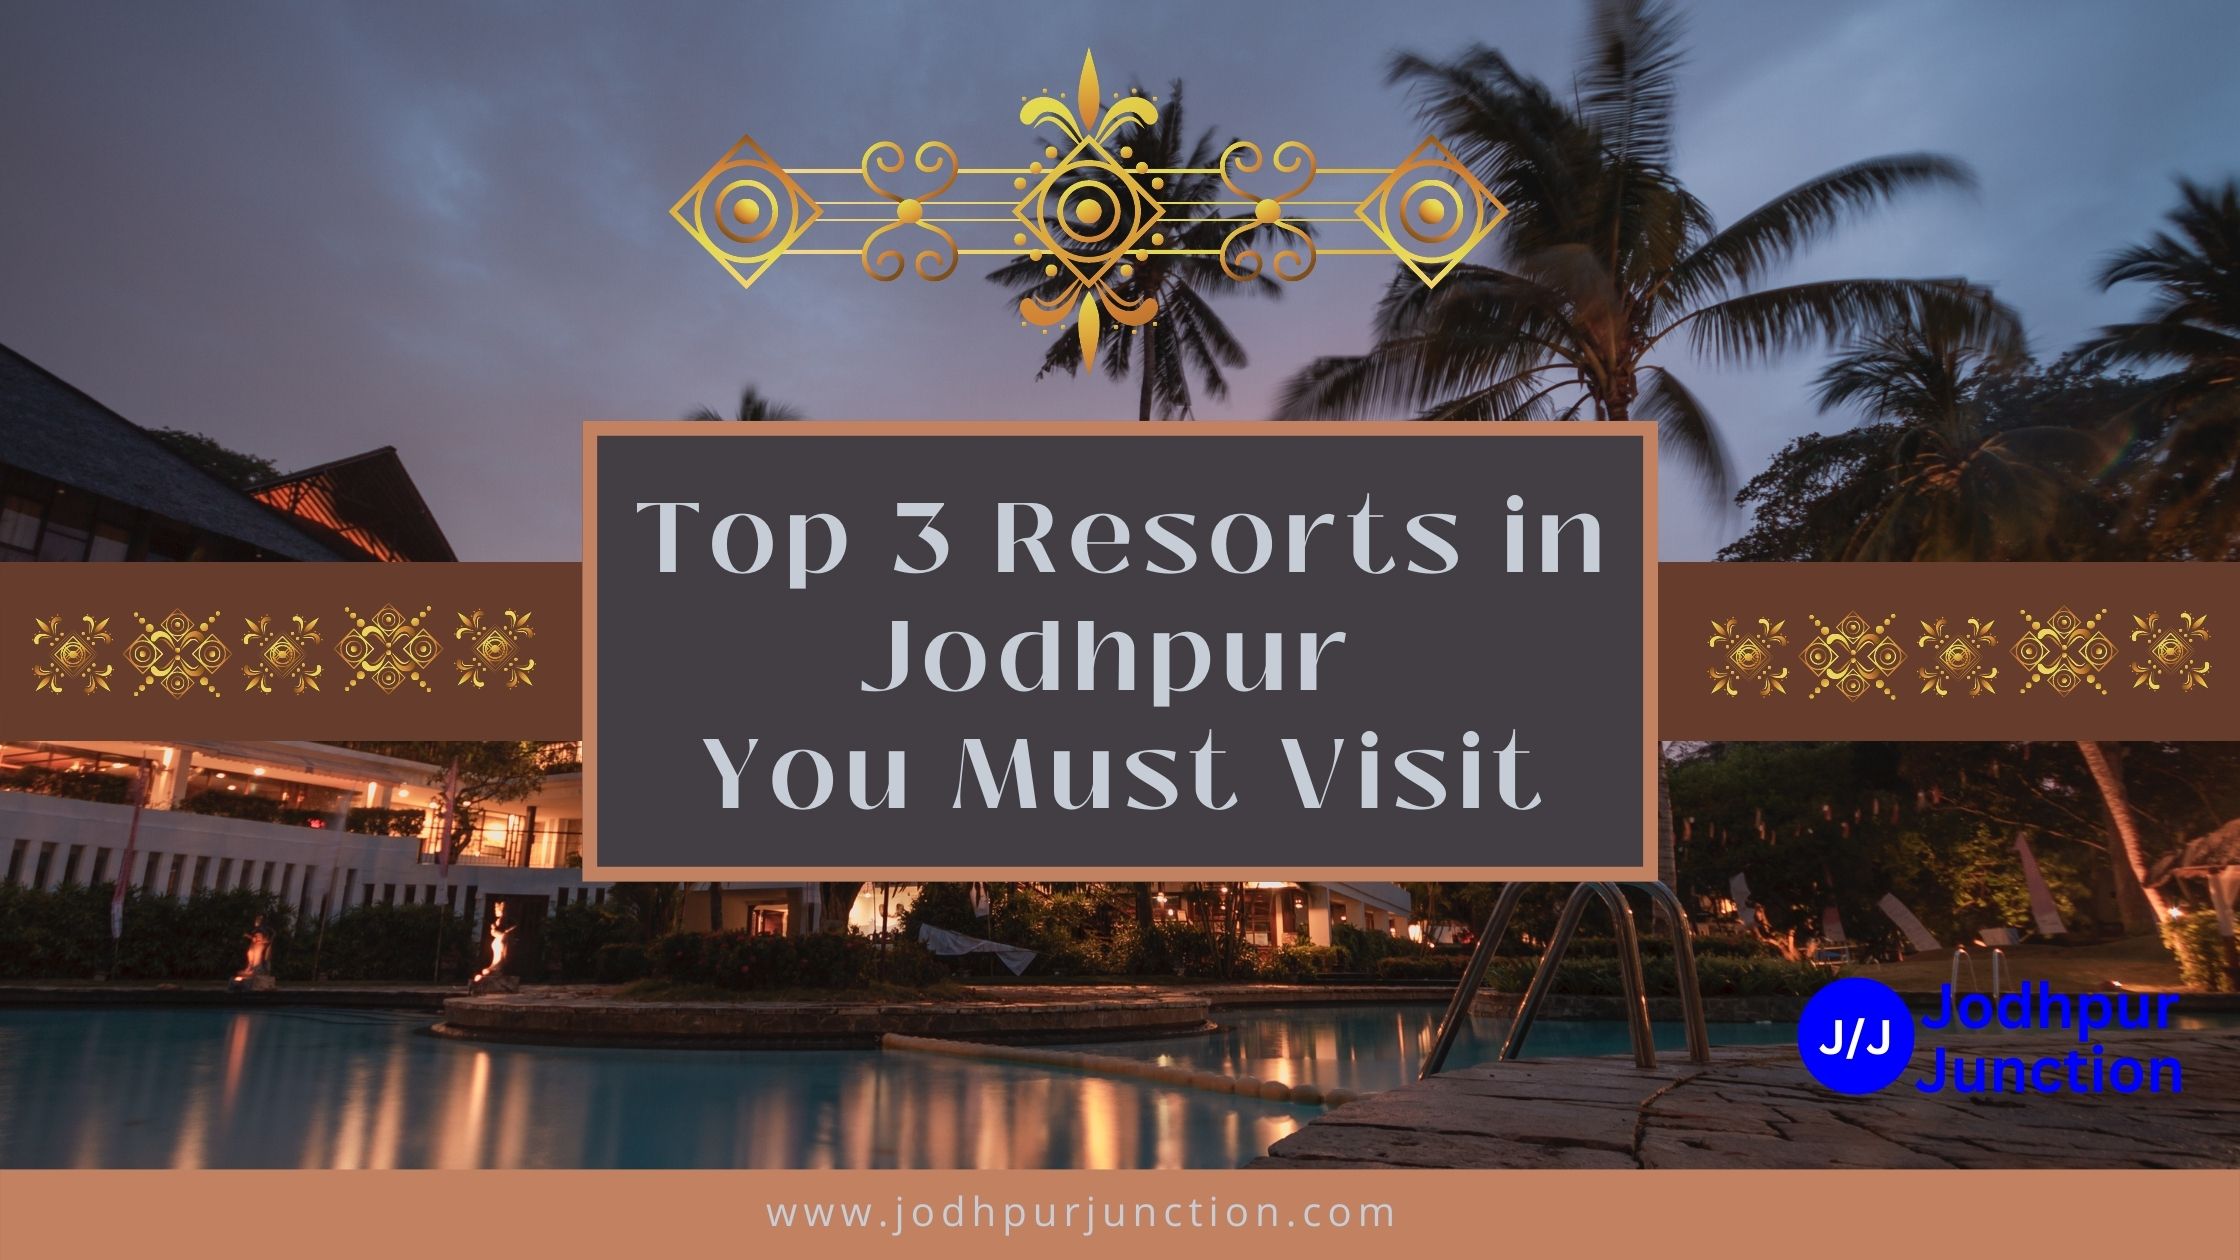 Top 3 Resorts in Jodhpur You Must Visit